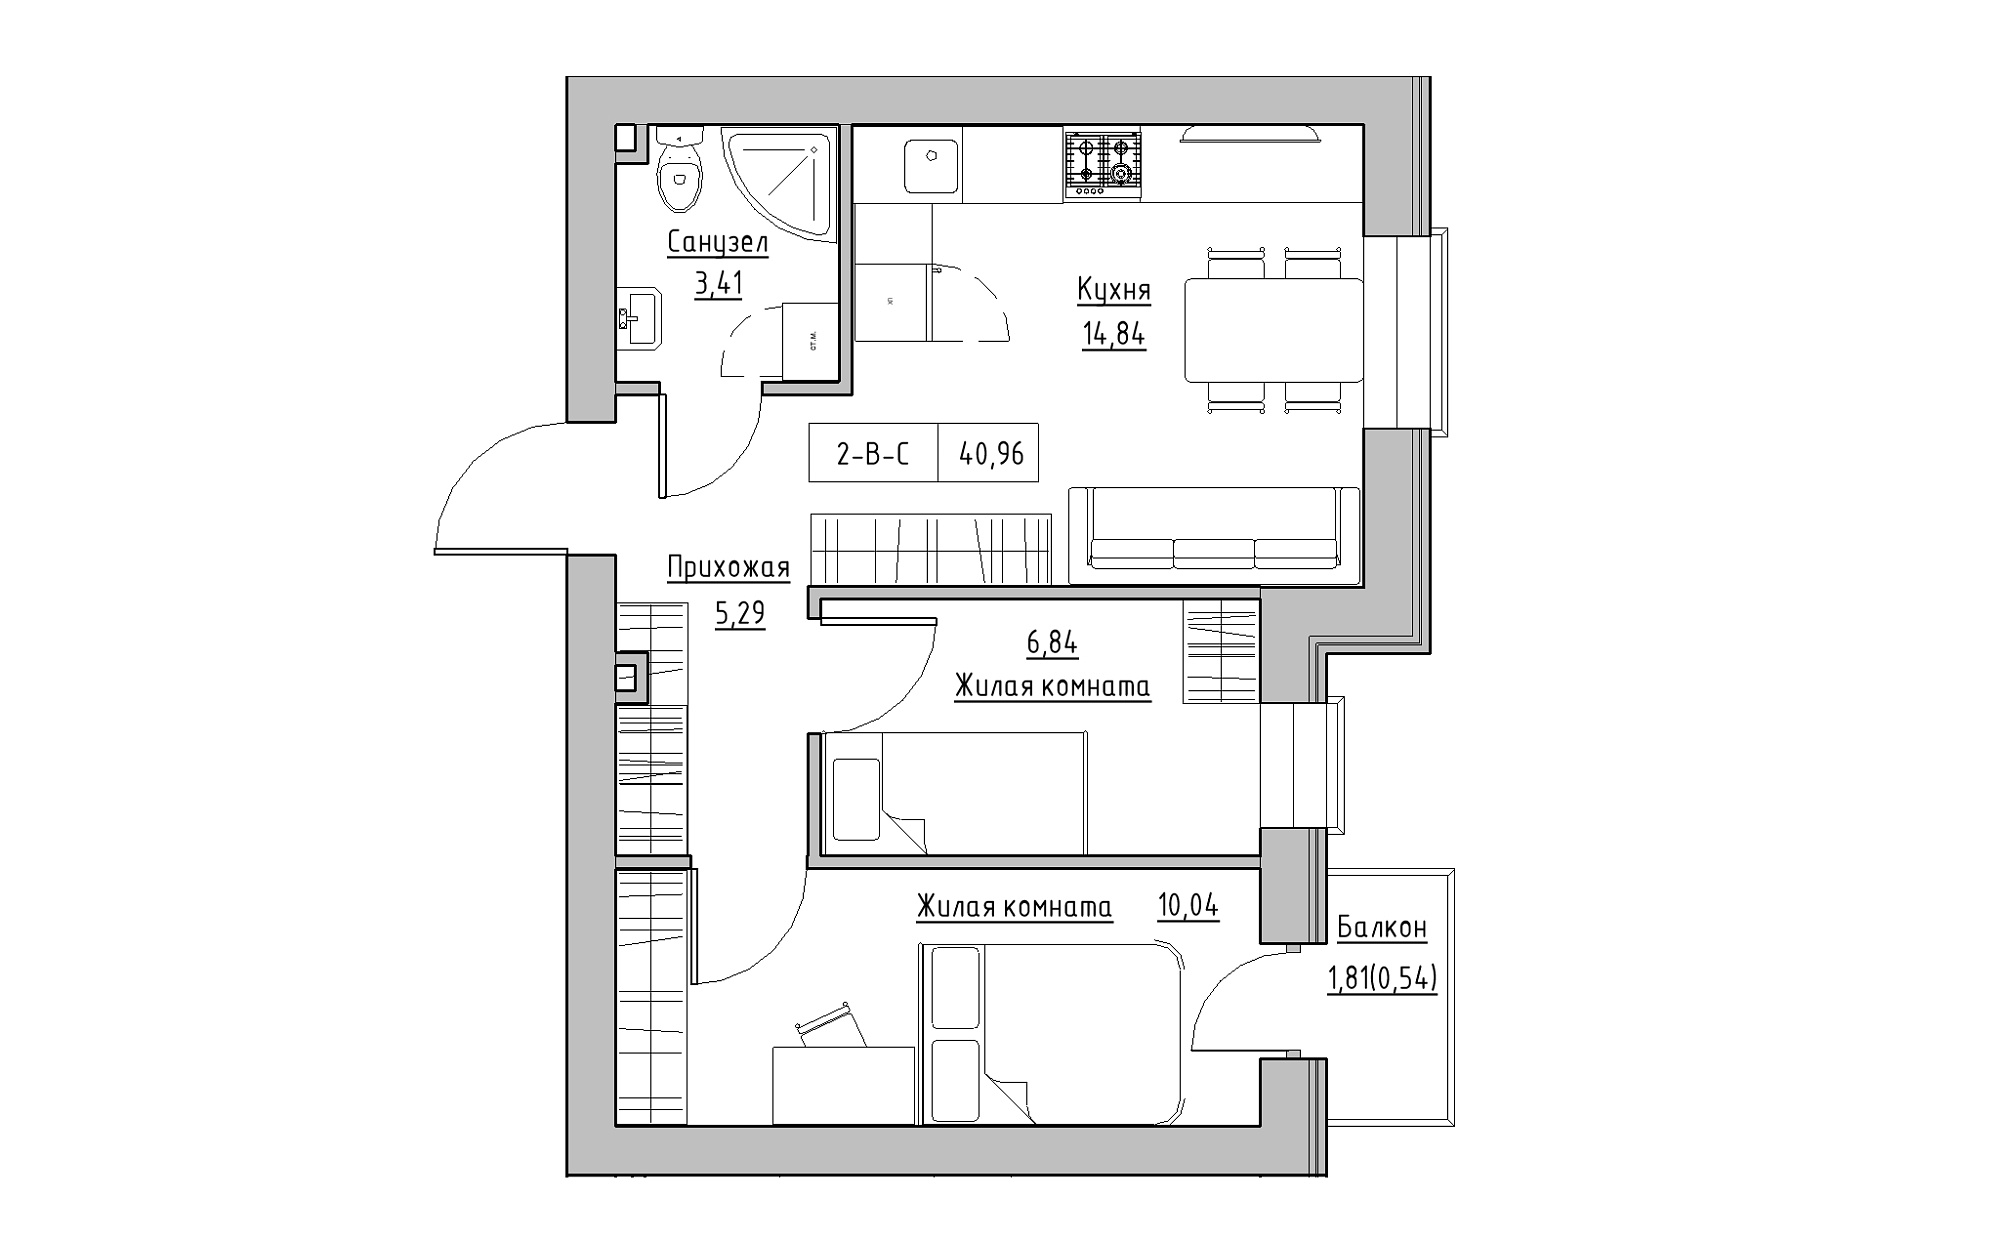 Планування 2-к квартира площею 40.96м2, KS-022-04/0010.